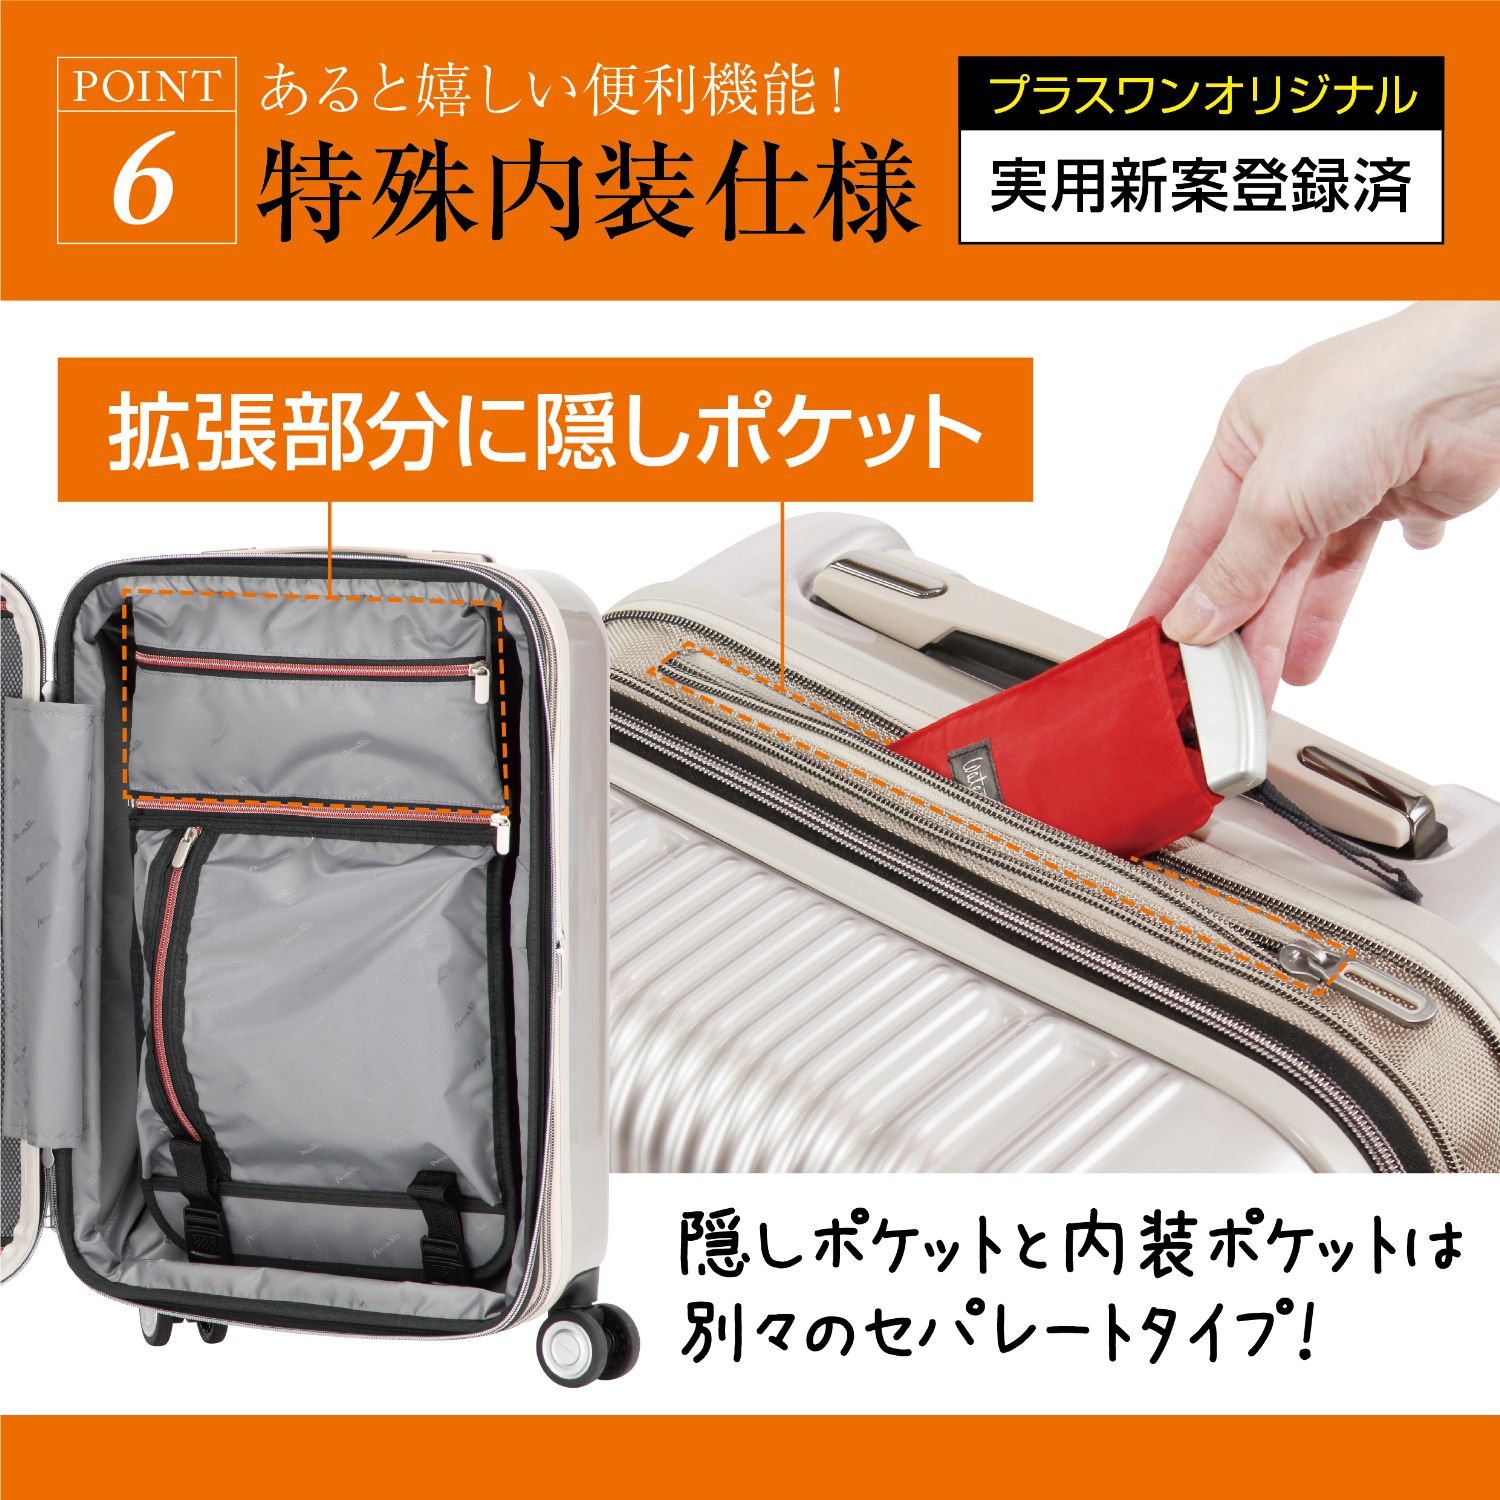 スーツケース ストッパー付き 拡張 Sサイズ 機内持ち込み 大容量 40L 